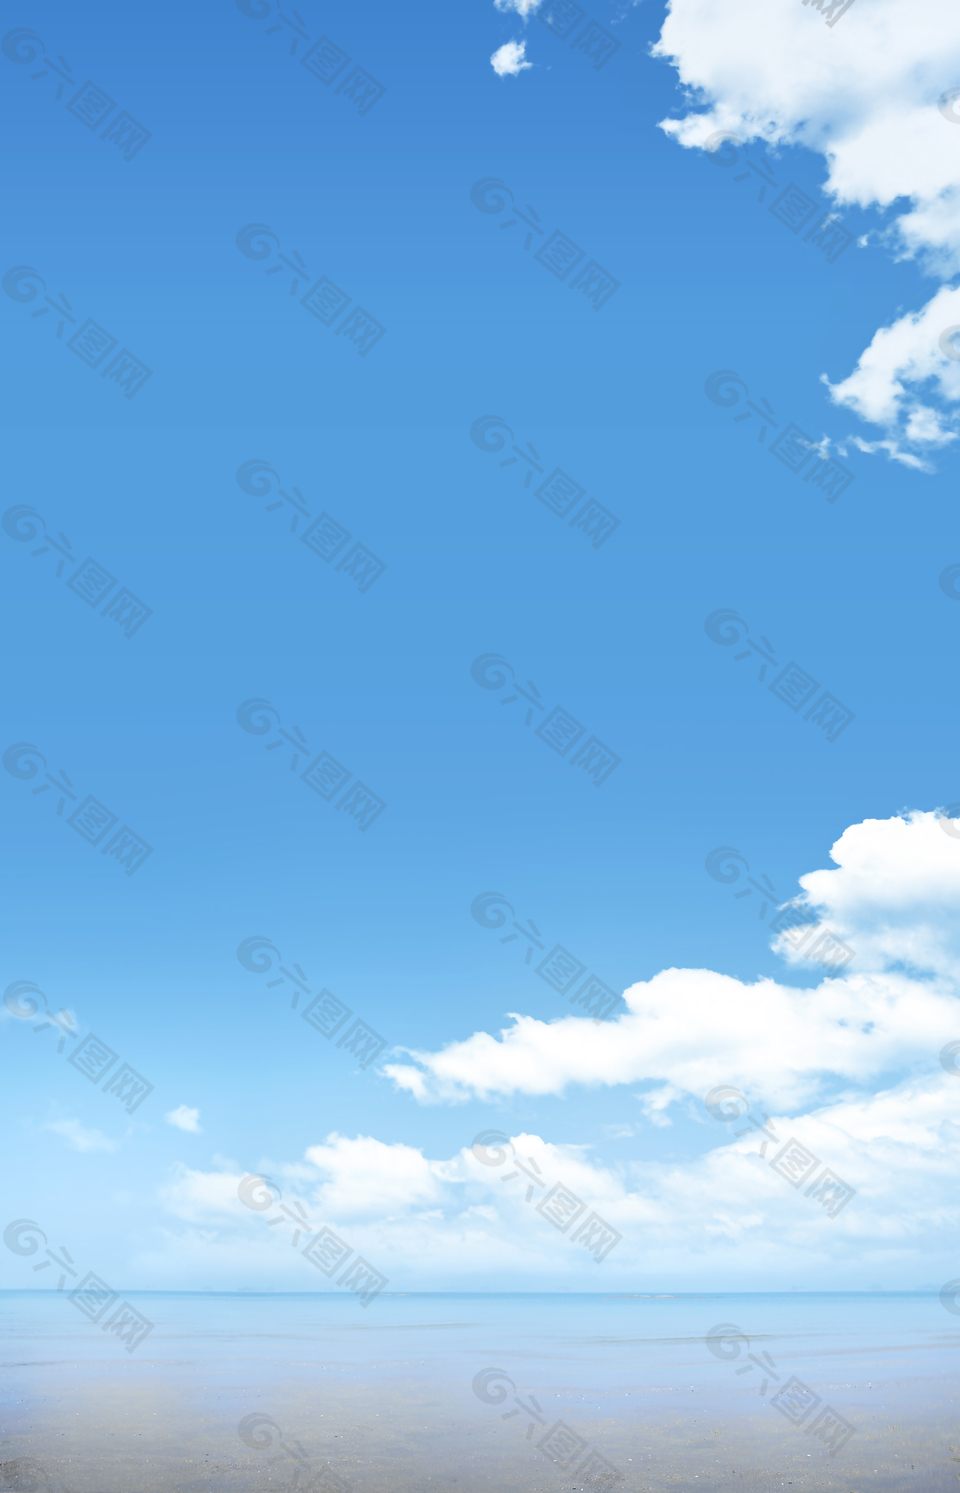 蓝天白云水面晴朗印刷背景